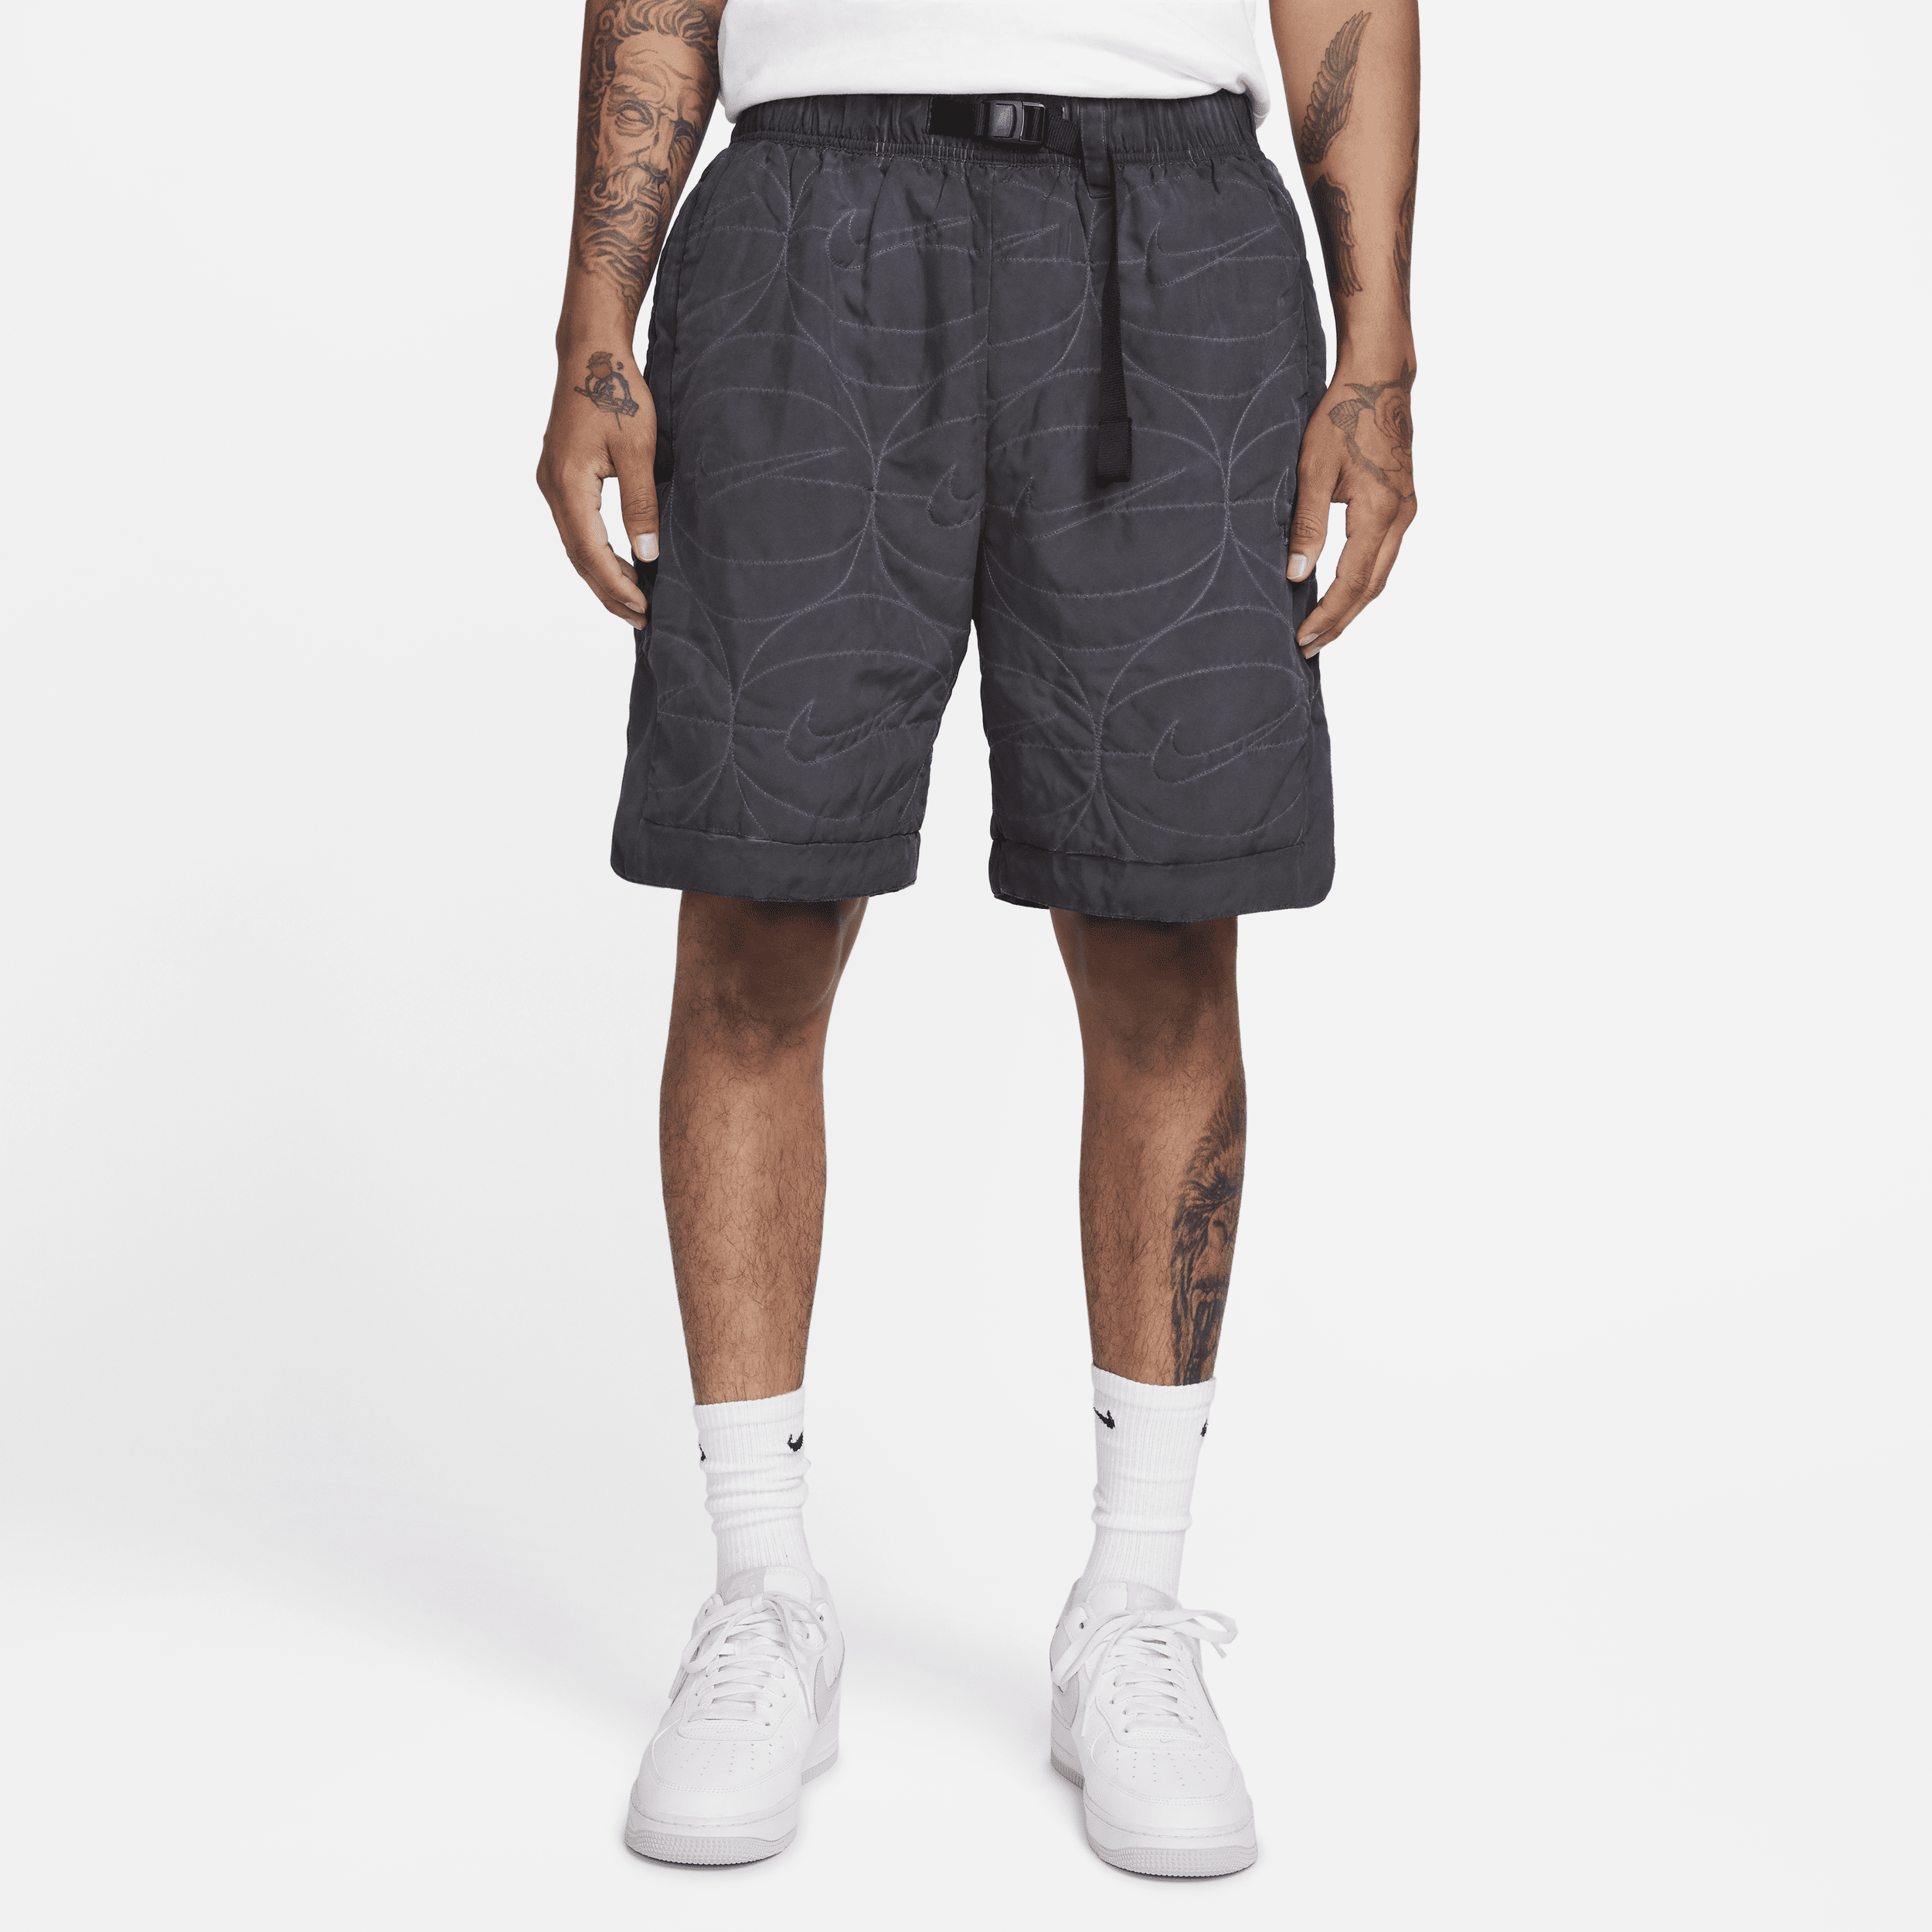 Nike geweven basketbalshorts met synthetische vulling voor heren (20 cm) Zwart